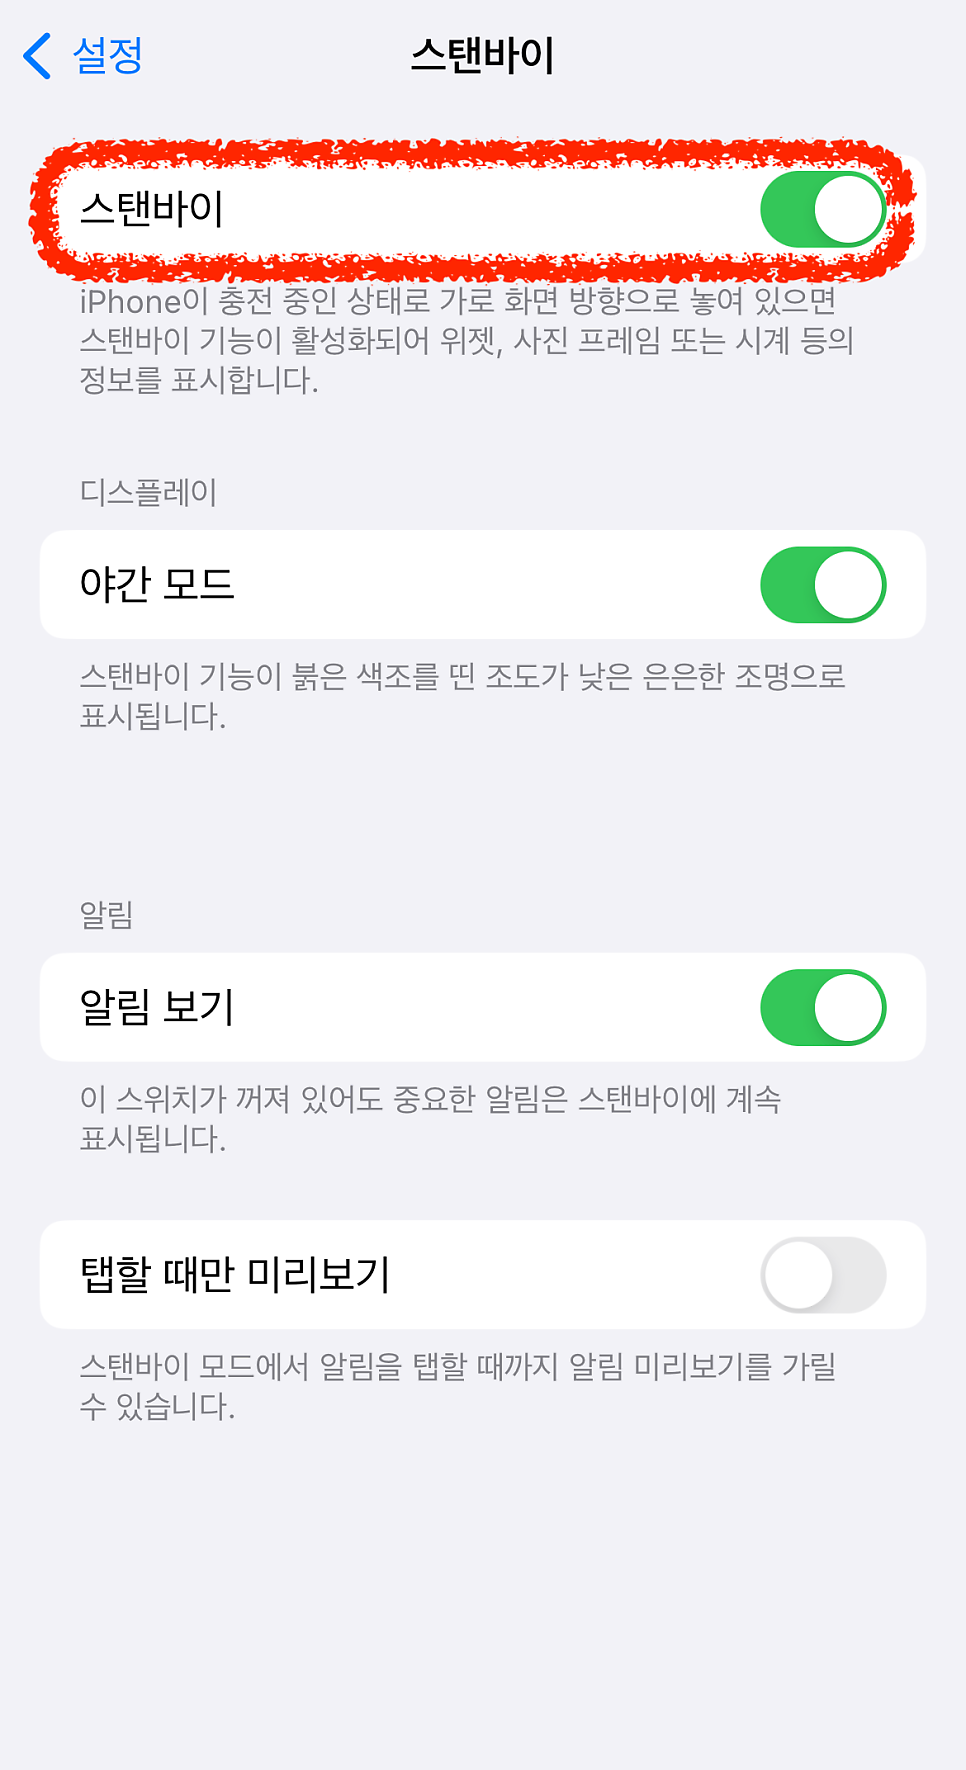 iOS17 아이폰 스탠바이 모드 설정, 화면 바꾸기, 위젯 추가/삭제 등 실행 사용법